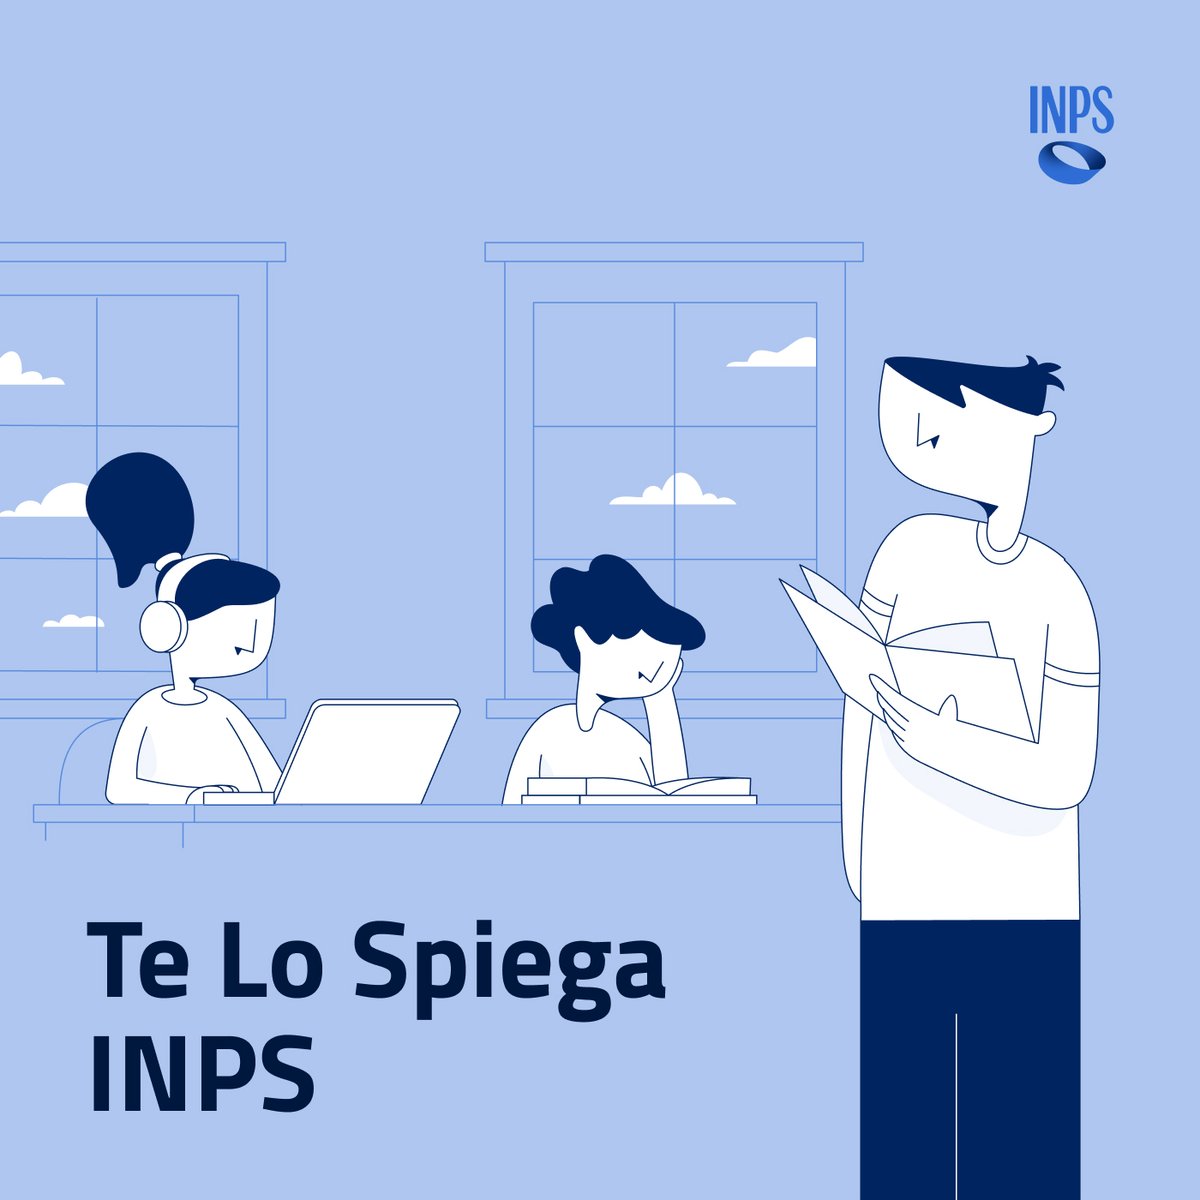 🔊 “INPS diventa digitale: i Big Data e il futuro della previdenza sociale' Online sul canale @spreaker #INPSonair la nuova puntata del #podcast 'Te lo spiega #INPS'. 🎧 rb.gy/q98g7p #InpsComunica